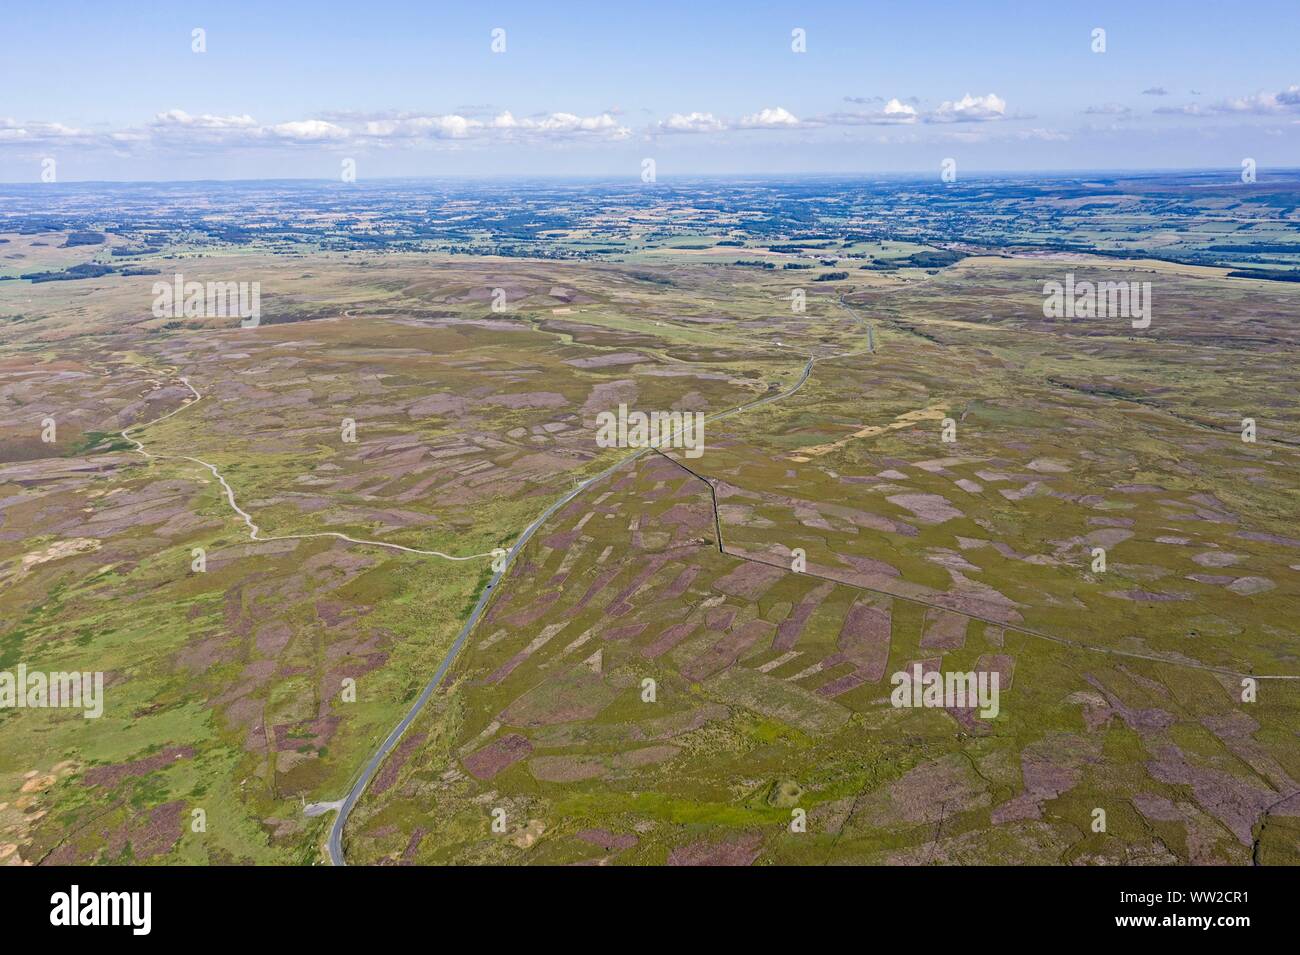 Grinton Moor sopra Swaledale nello Yorkshire Dales, Luglio. Immagine aerea mostra patchwork modello dove moor è stato masterizzato su rotazione per massimizzare ha Foto Stock